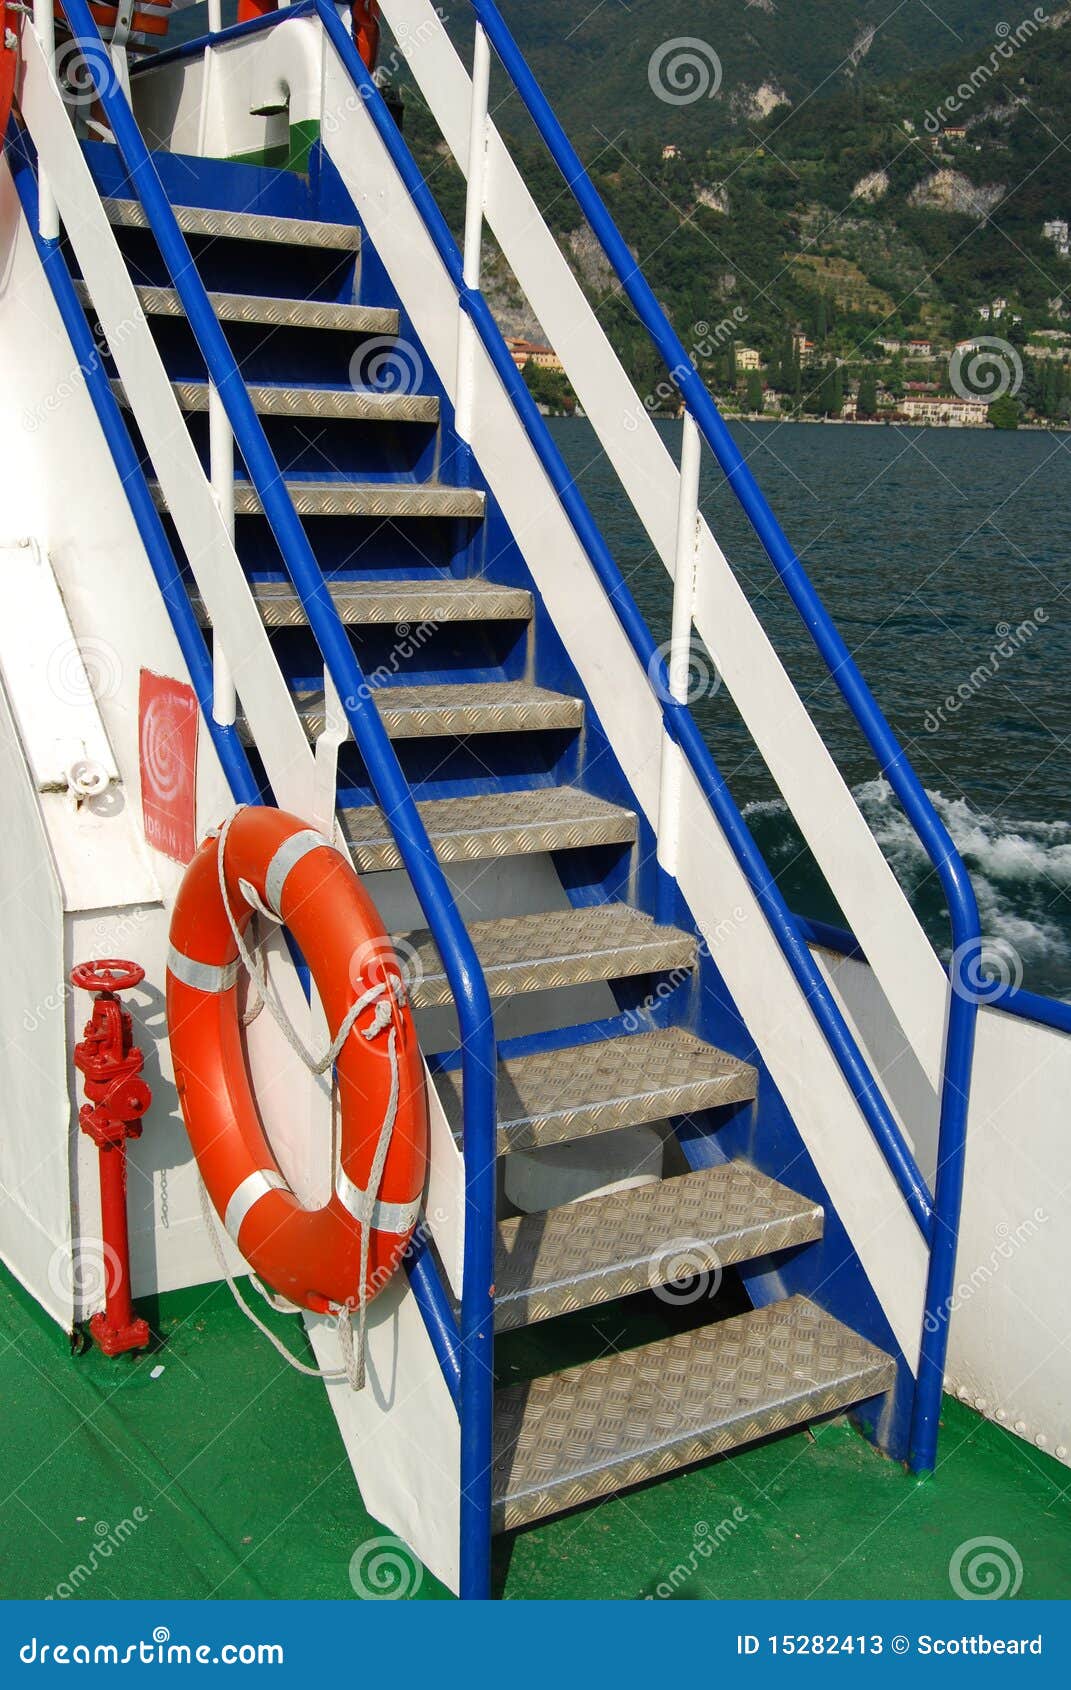 Между палубами. Лестница-трап, Krause 810229. Лестница на корабле. Лестница трап с поручнем. Трап на корабле.